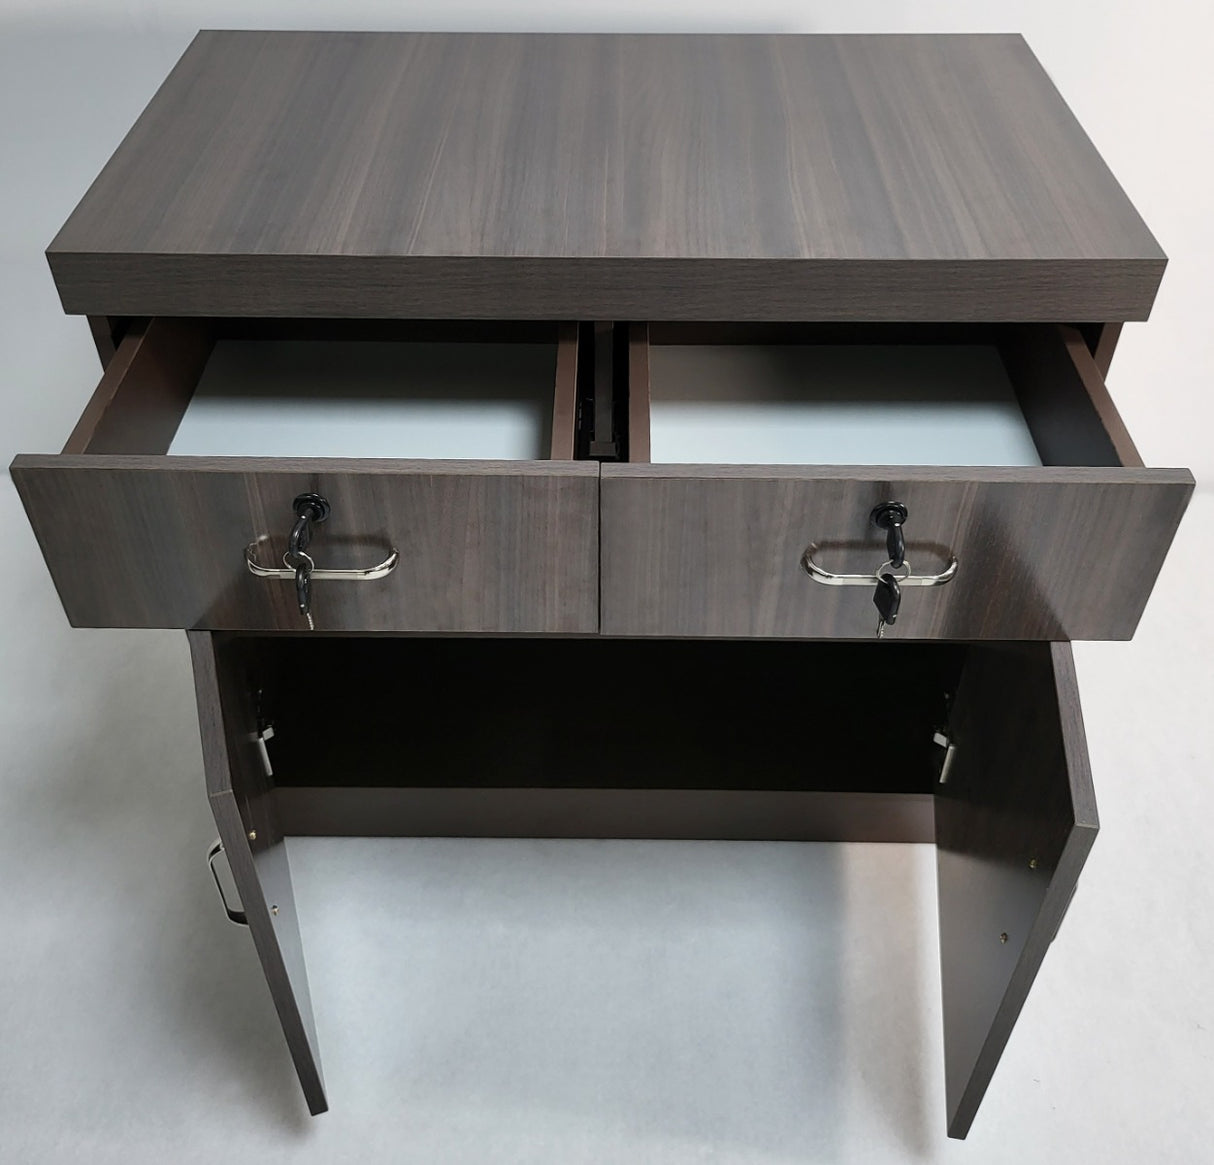 Modern Grey Oak Executive Office Desk with Pedestal and Desk Level Side Return - KW-8872-1800mm